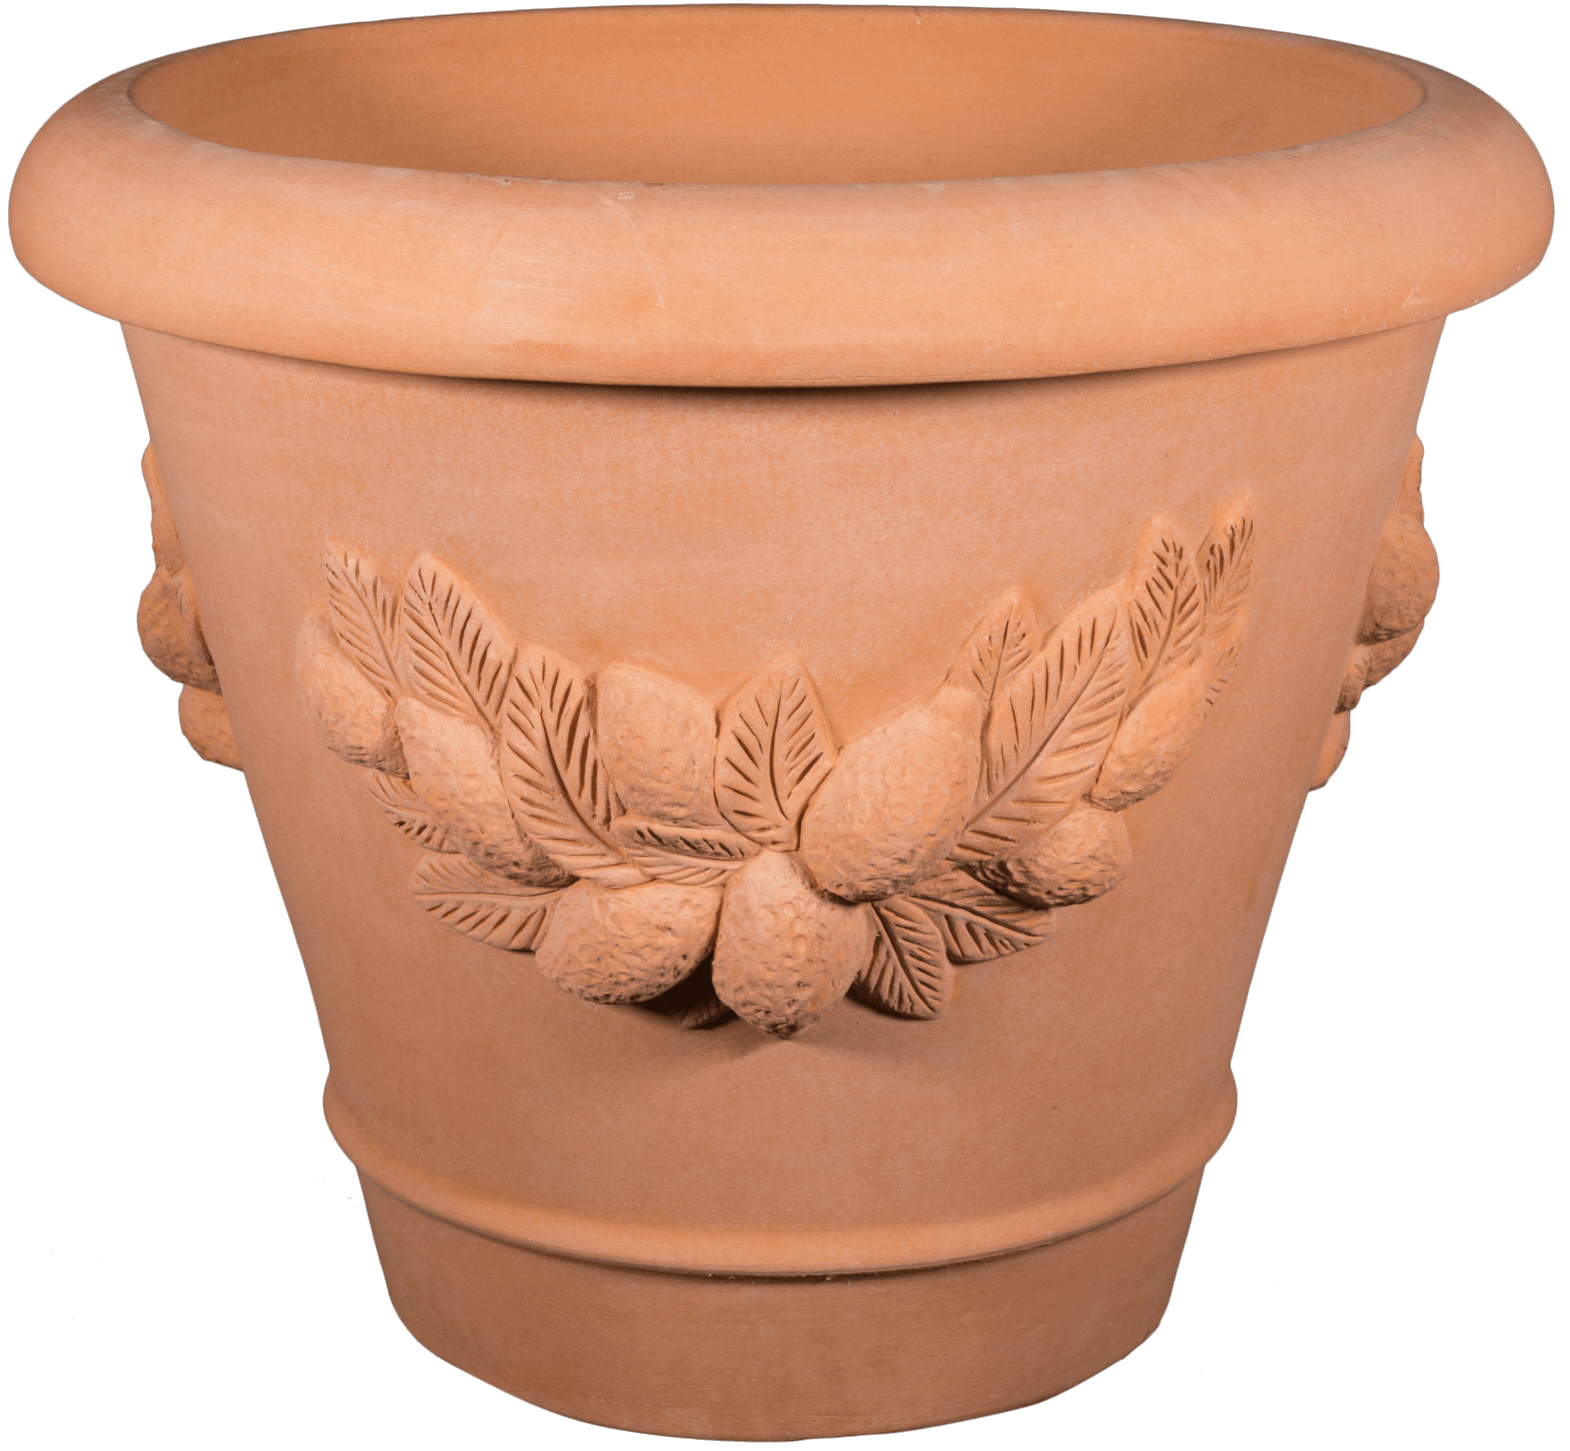 Terracotta Vases for Sale from Impruneta